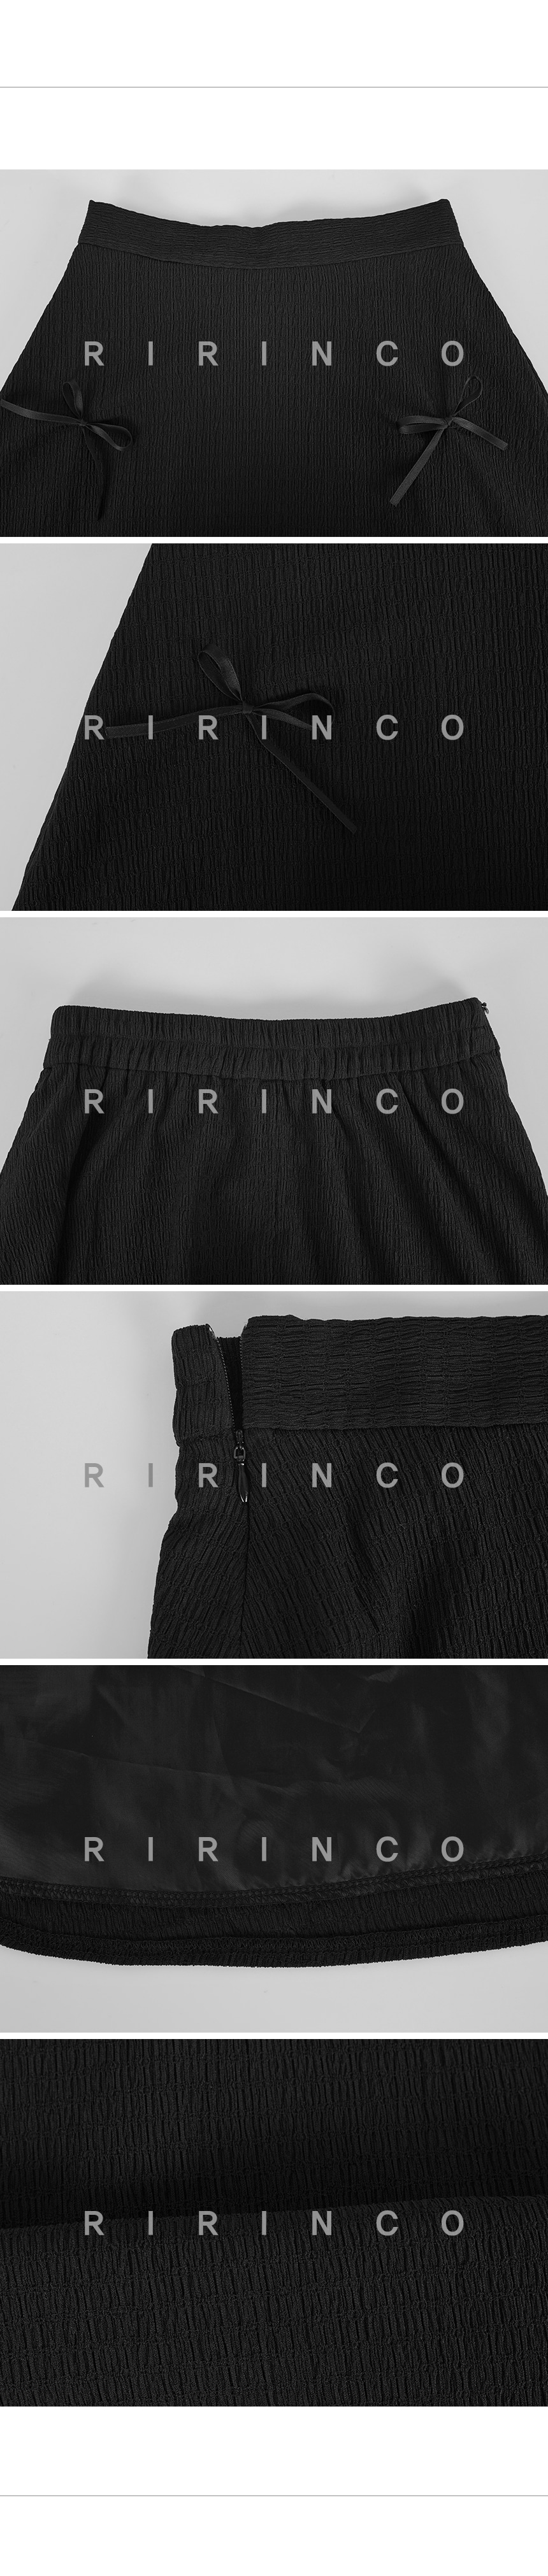 RIRINCO リンクルリボンフレアロングスカート 